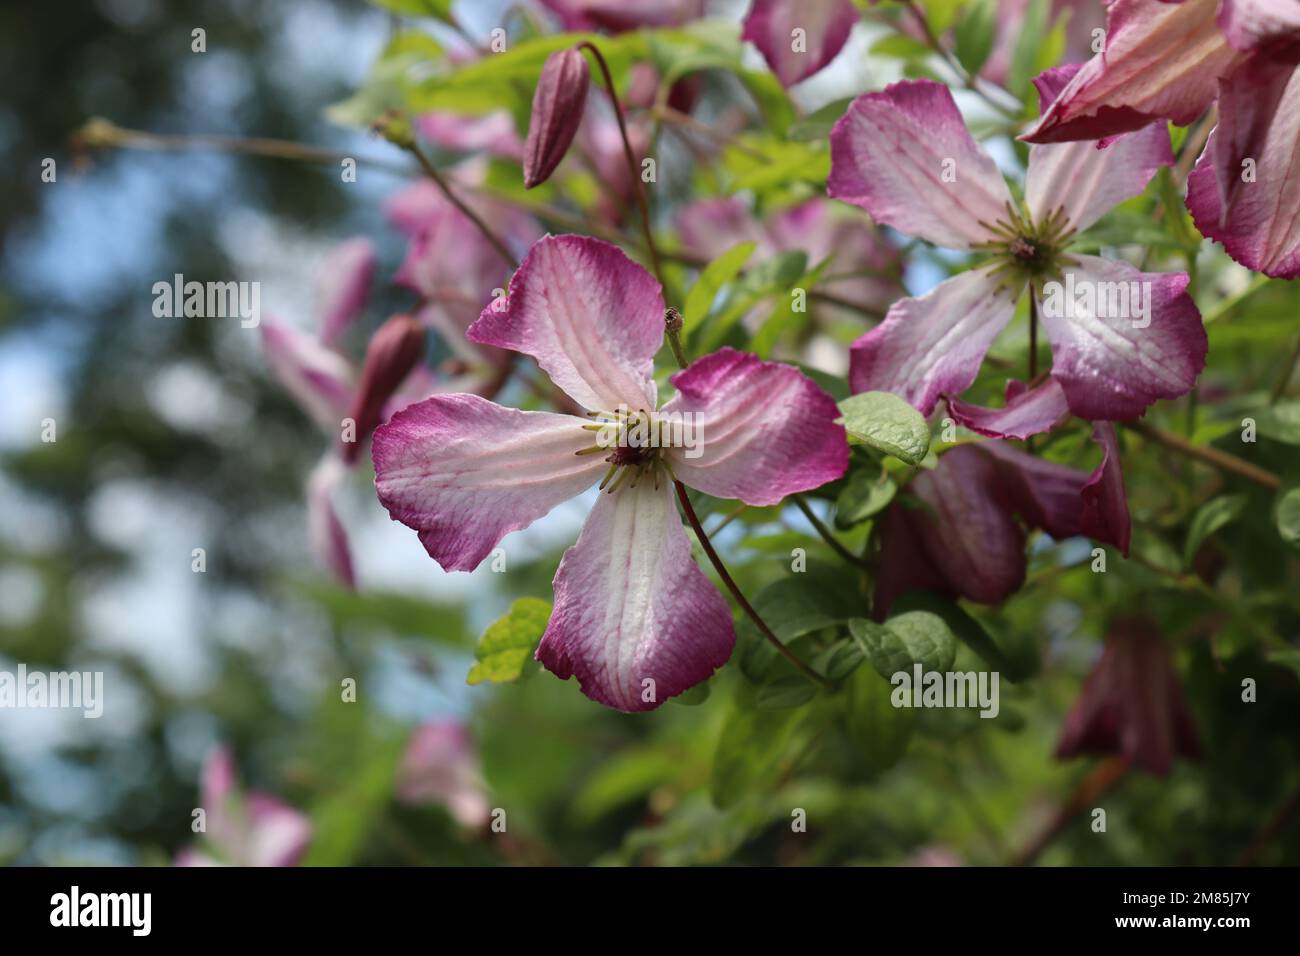 Las hermosas flores de verano de la planta trepadora Clematis viticella 'Minuet'. Un grupo de flores blancas y rosadas con espacio de copia a la izquierda. Foto de stock